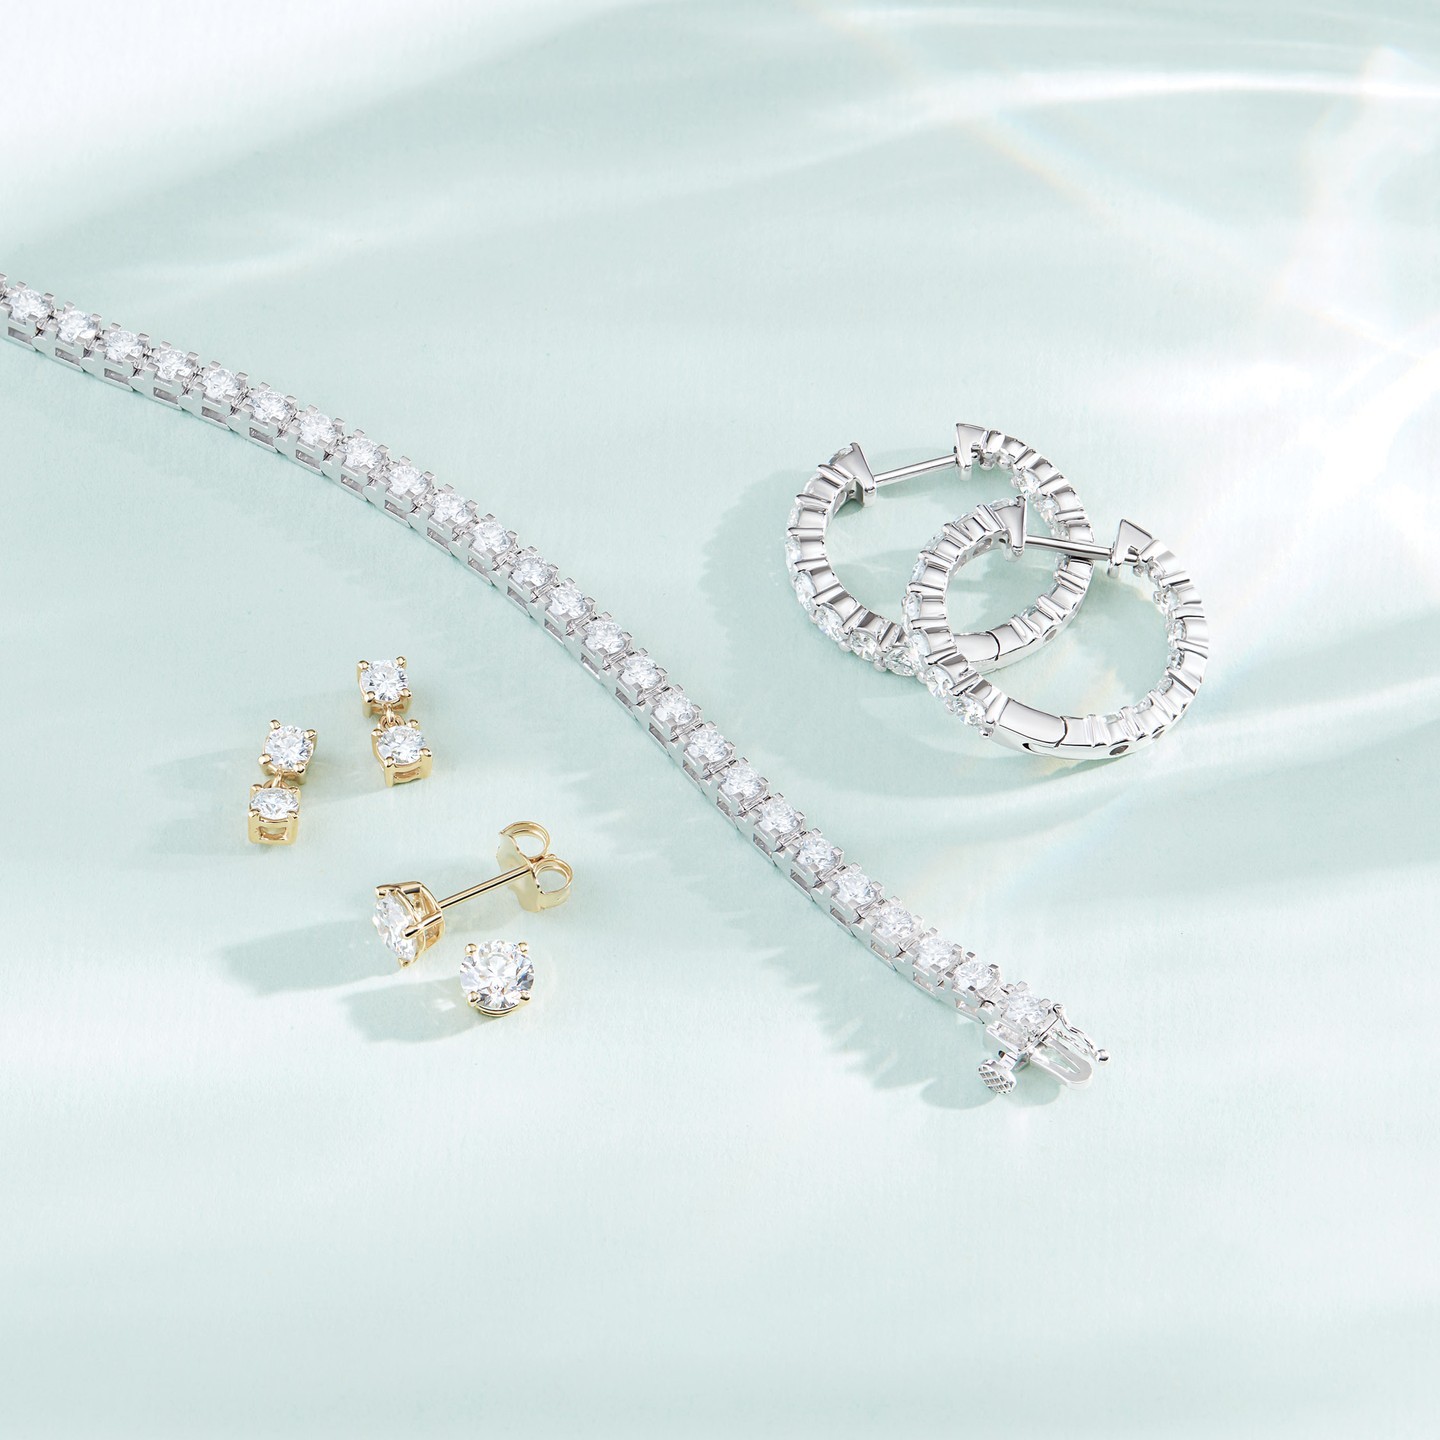 Pulsera tenis diamantes - ideas para comprar joyas de diamantes minimalistas y discretas